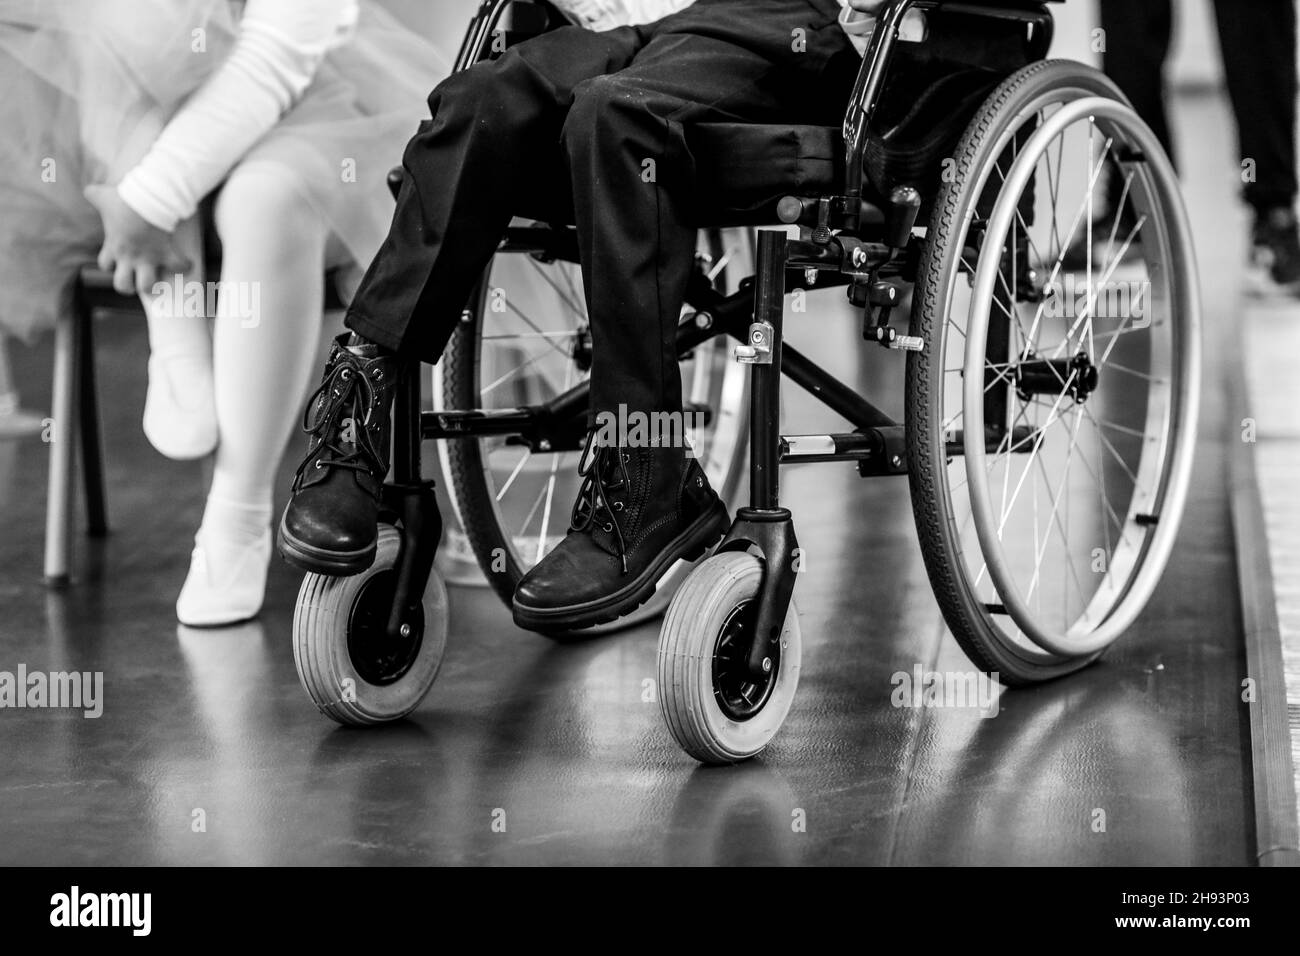 Image de faible profondeur de champ (mise au point sélective) avec les détails d'un jeune garçon malade en fauteuil roulant. Banque D'Images